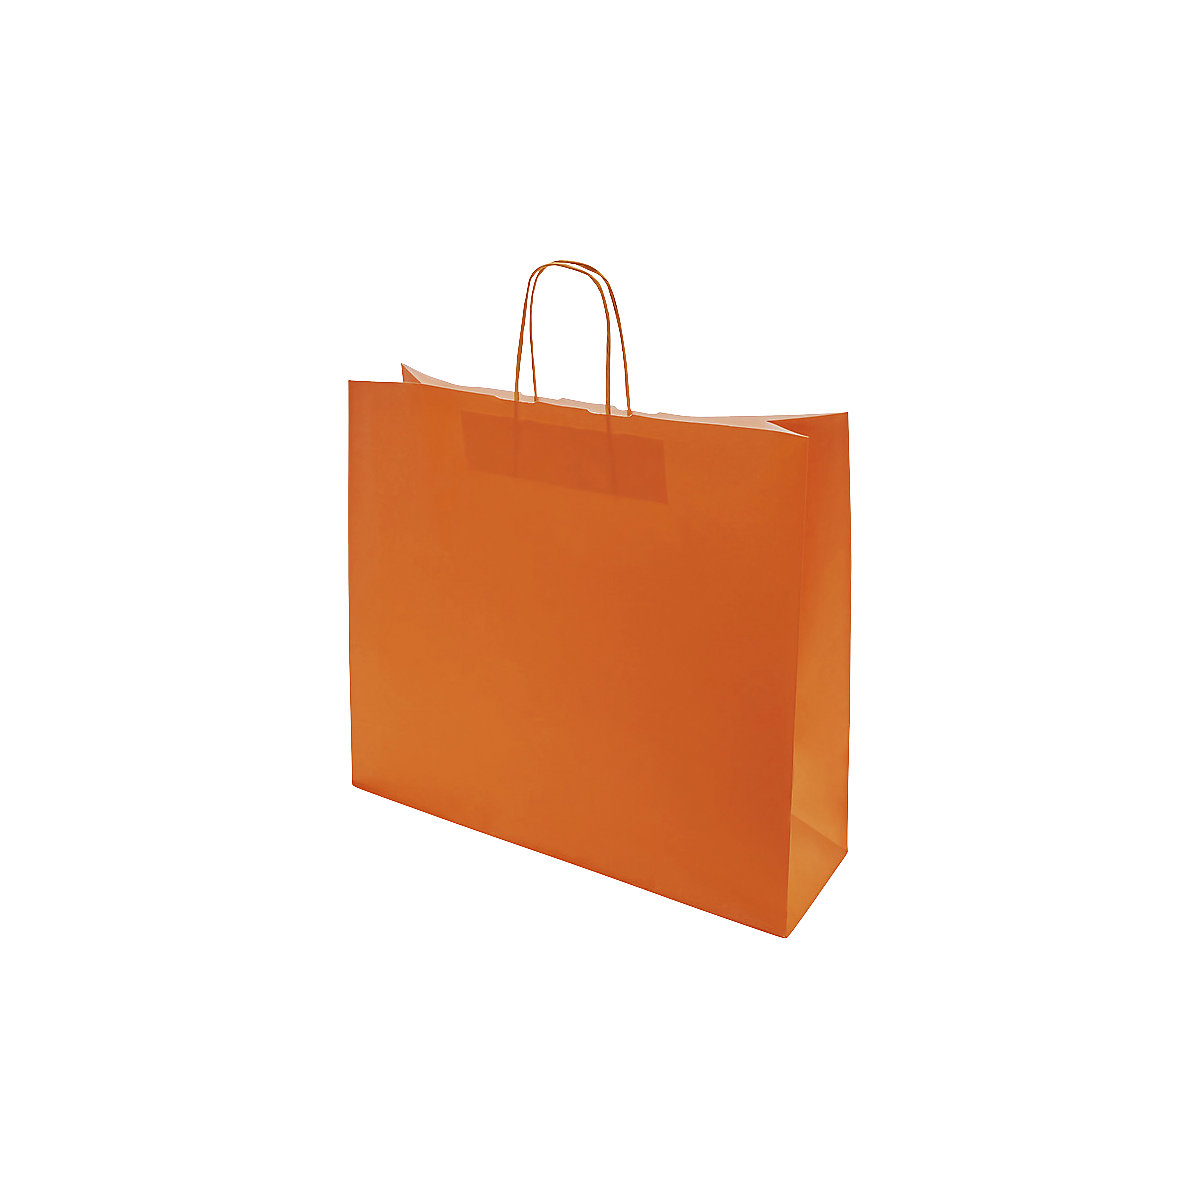 Papiertragetasche FRESH, orange, LxBxH 420 x 130 x 370 mm, 110 g/m², VE 150 Stk, ab 10 VE-1